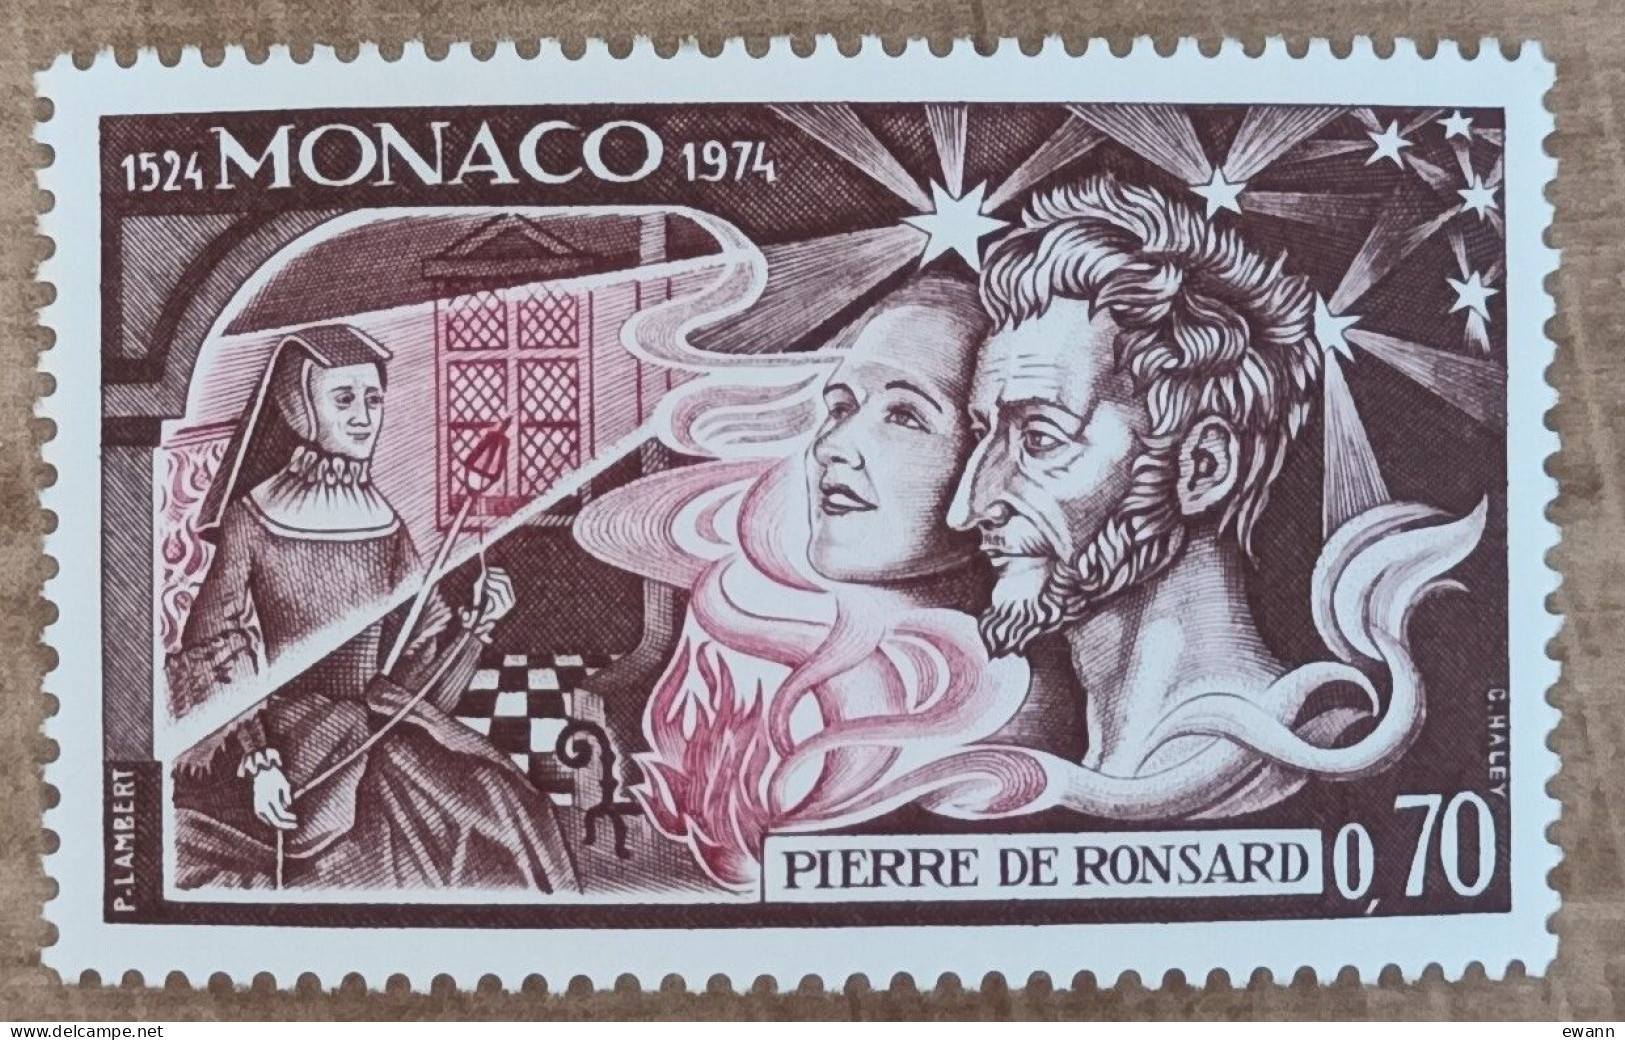 Monaco - YT N°964 - Pierre De Ronsard - 1974 - Neuf - Unused Stamps